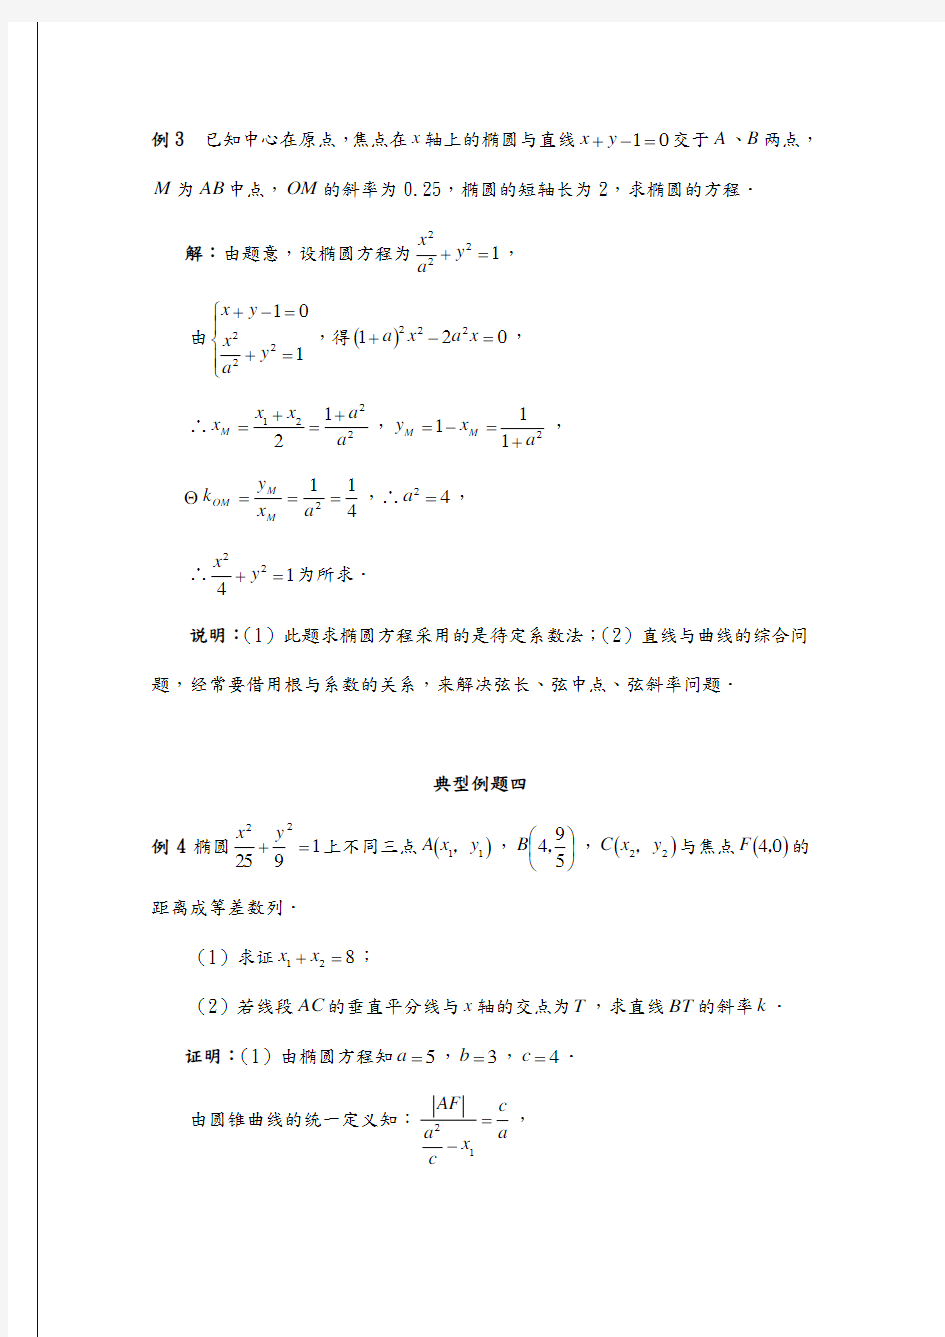 《椭圆》方程典型例题20例(标准解析)